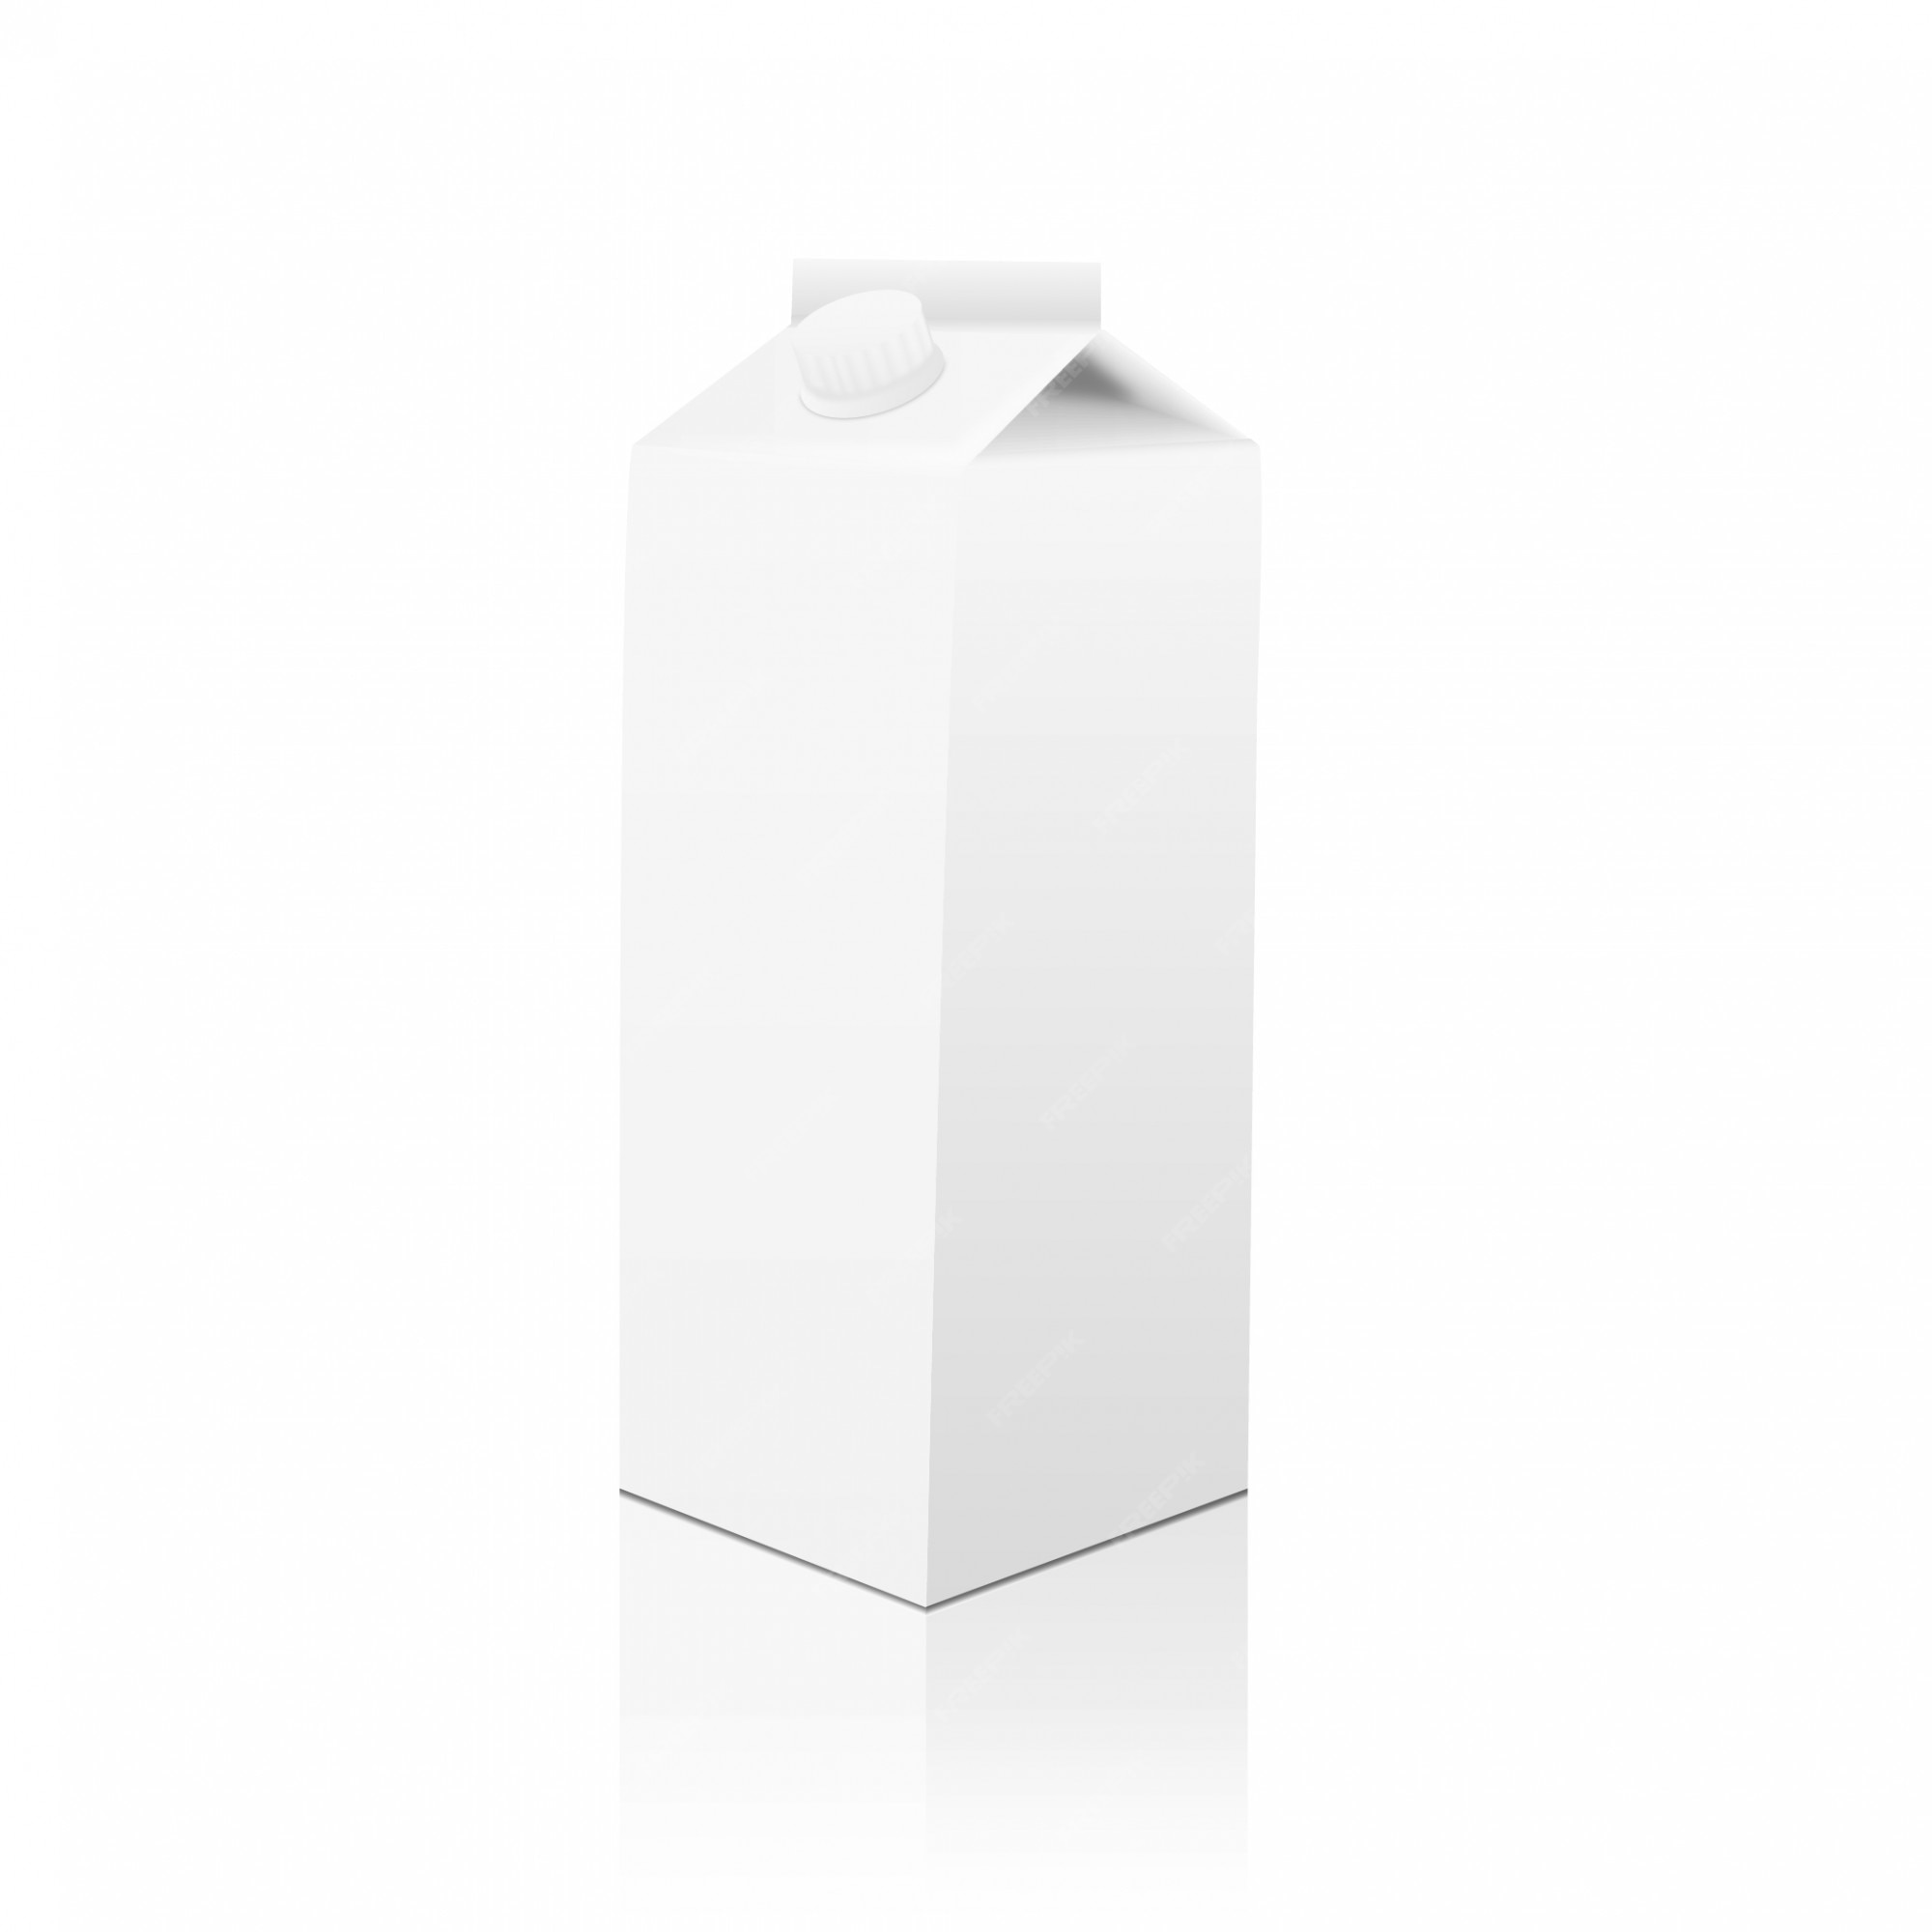 Envase de cartón blanco productos lácteos, jugos o bebidas. | Vector Premium